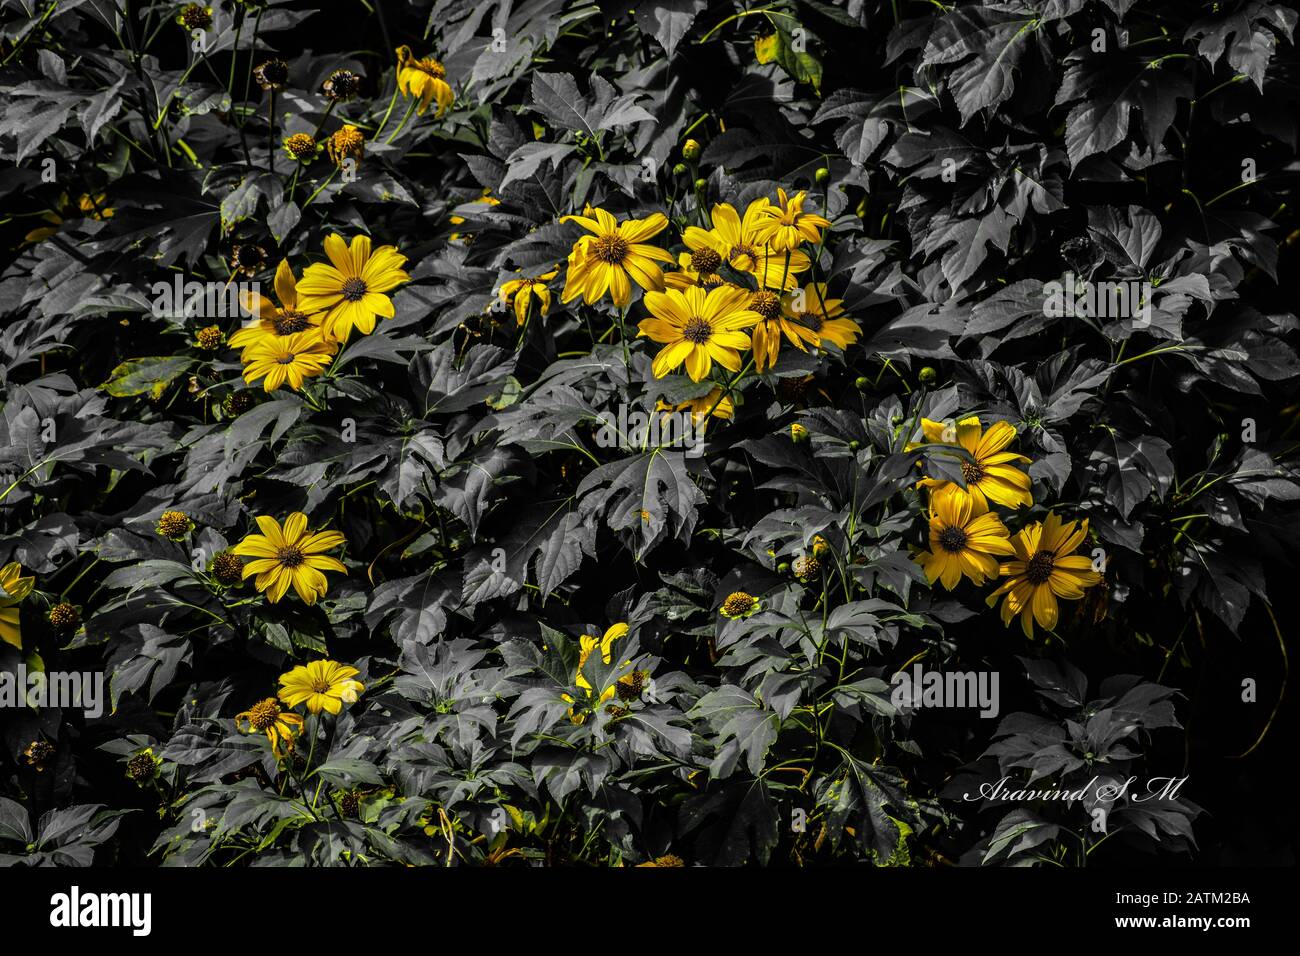 Belles fleurs jaunes avec toutes les autres choses en noir et blanc Banque D'Images